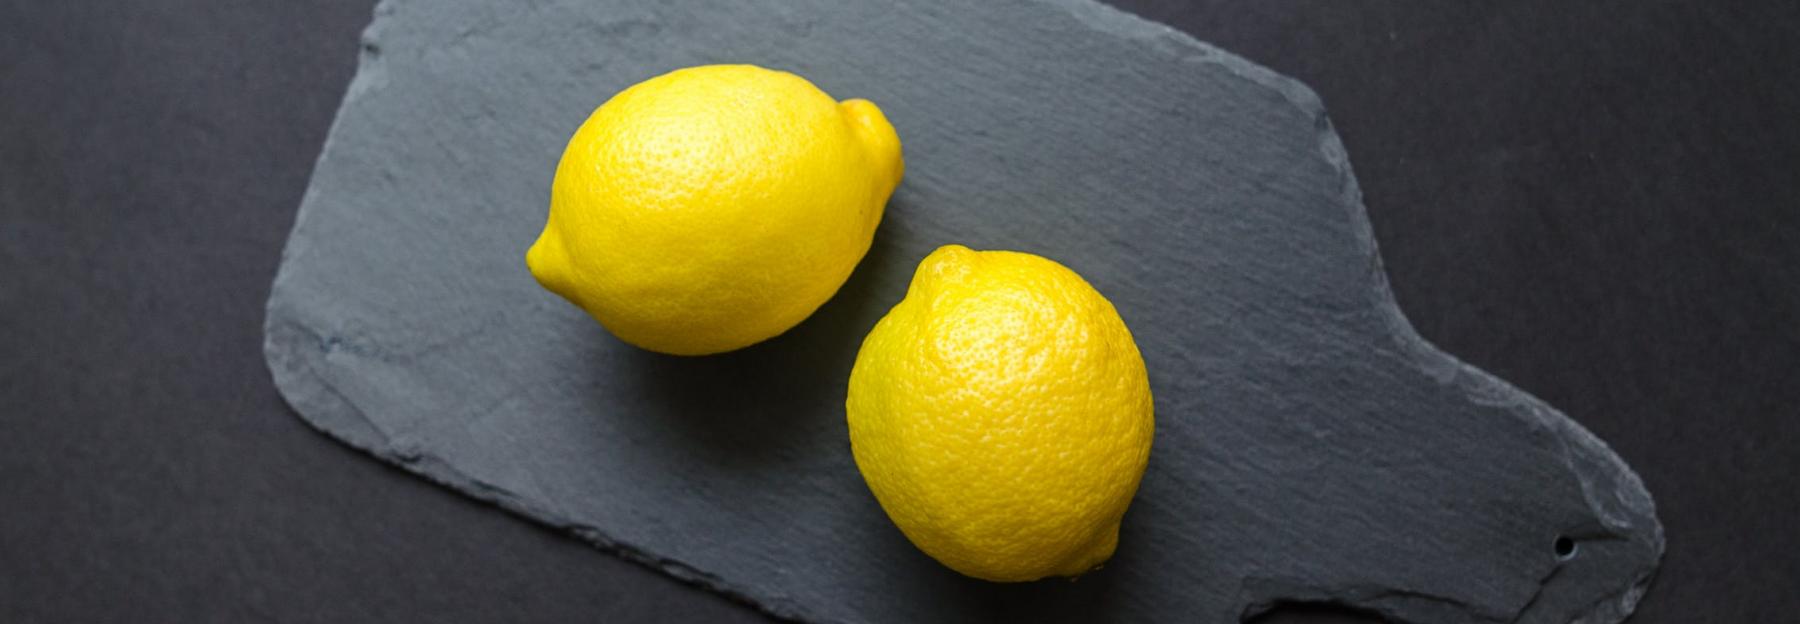 Für selbstgemachte Kosmetik verwenden wir ausschließlich Biozutaten, z.B. unbehandelte Zitronen.